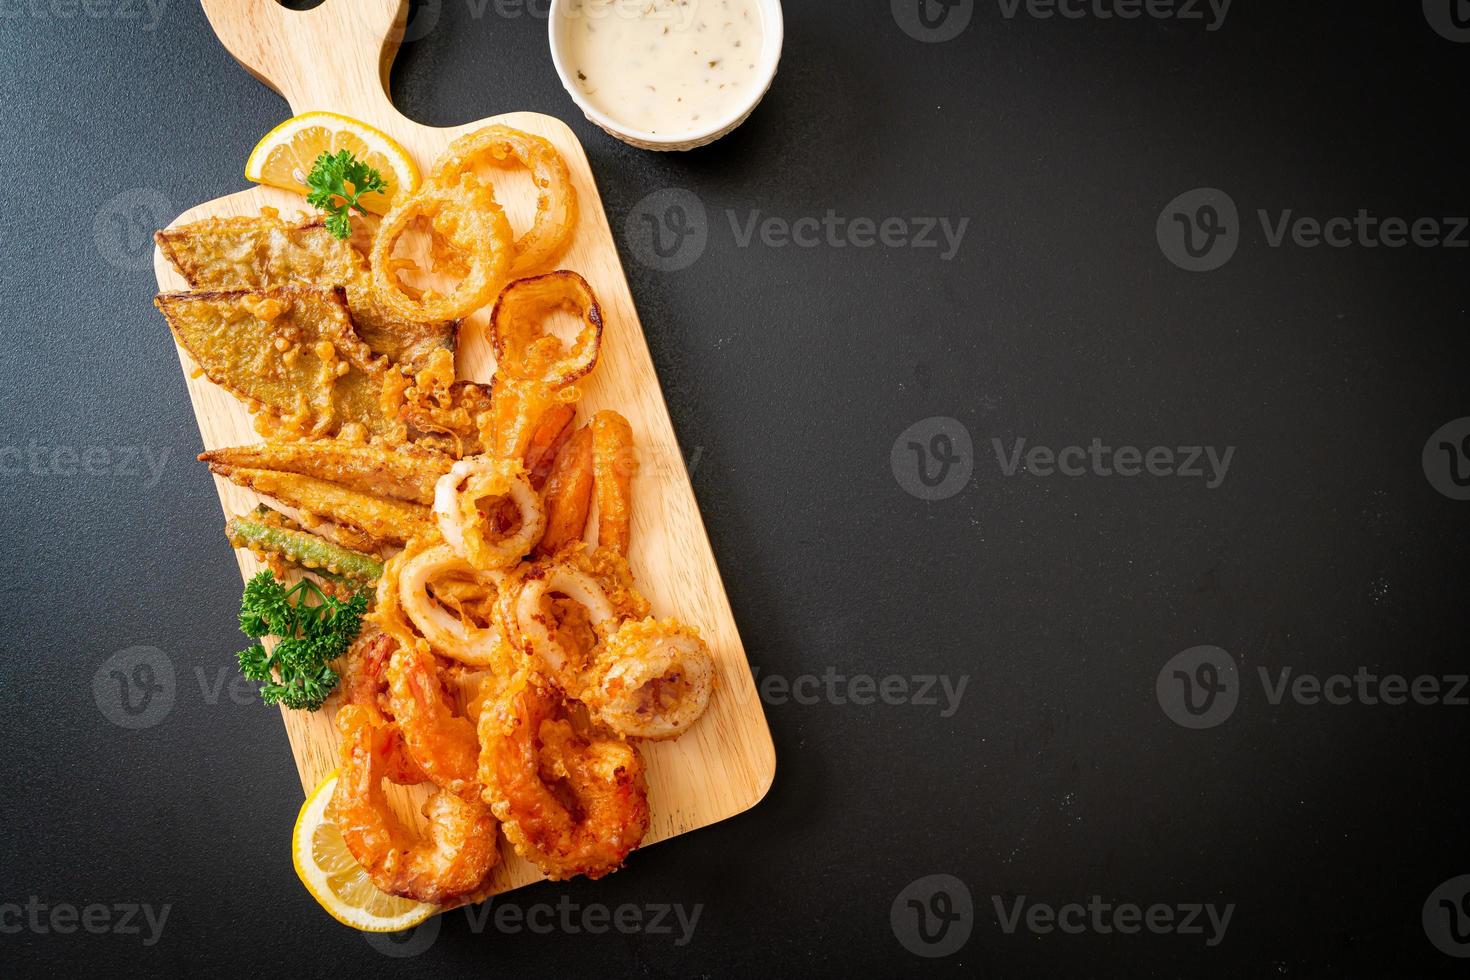 mariscos fritos de camarones y calamares con vegetales mixtos - estilo de comida poco saludable foto